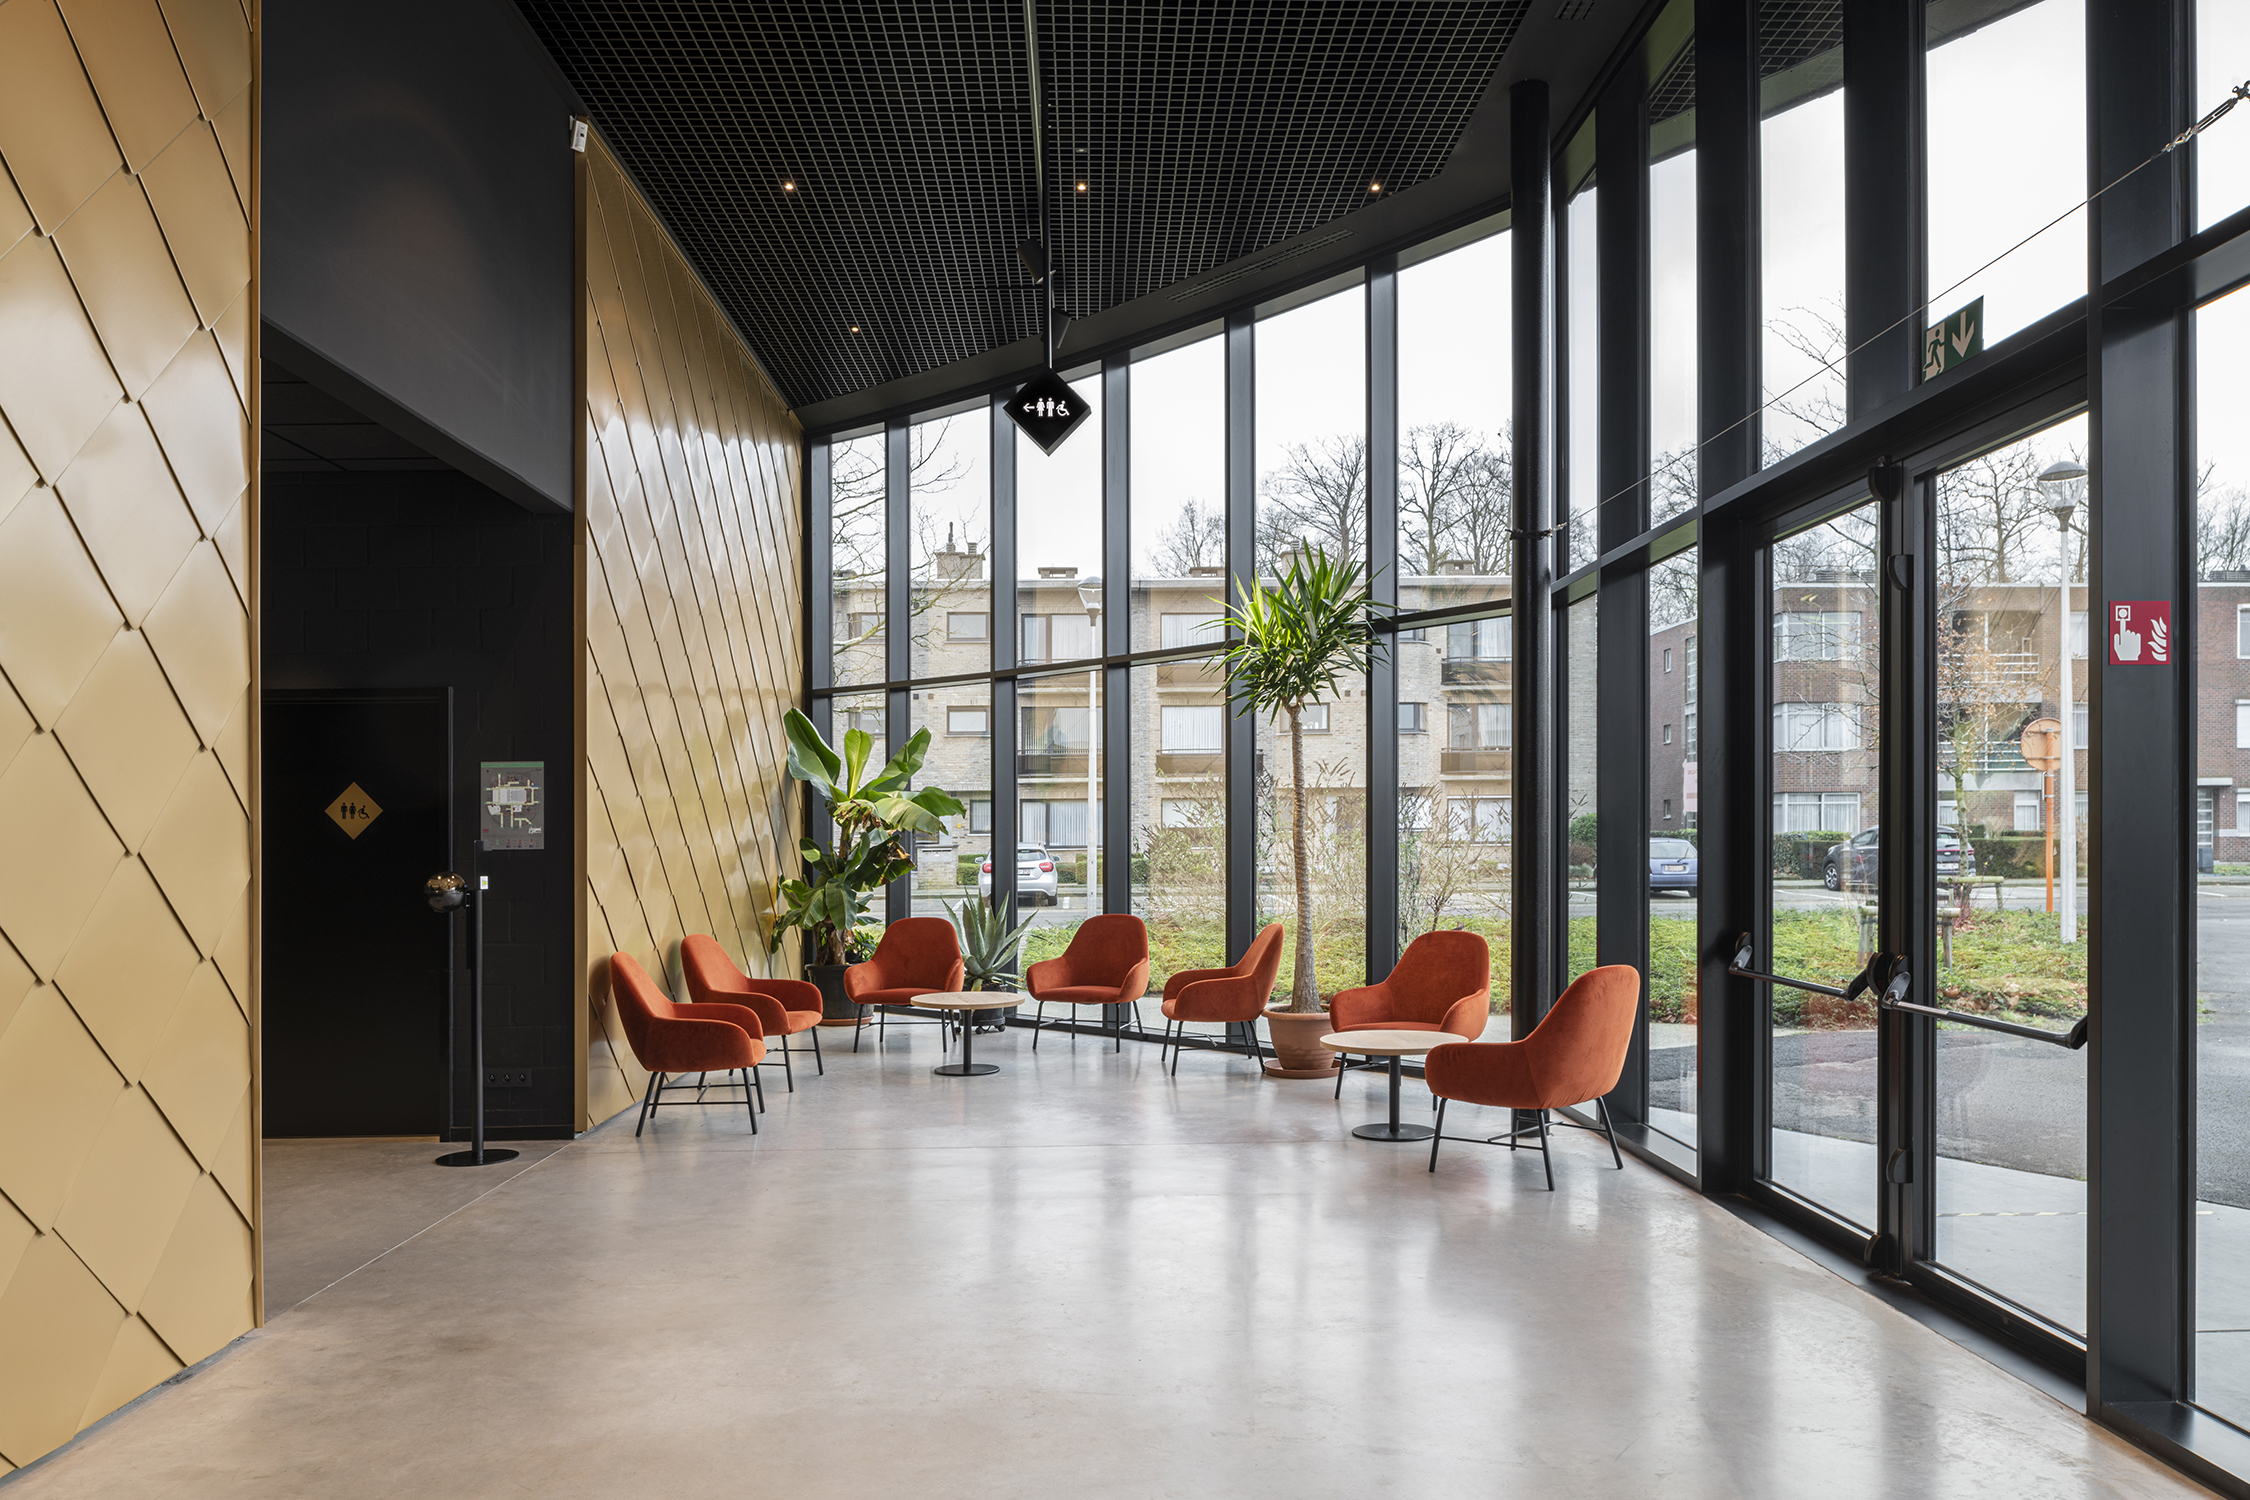 lux zaal met grote ramen met zwarte aluminium profielen die het polyvalente karakter van het gebouw versterken